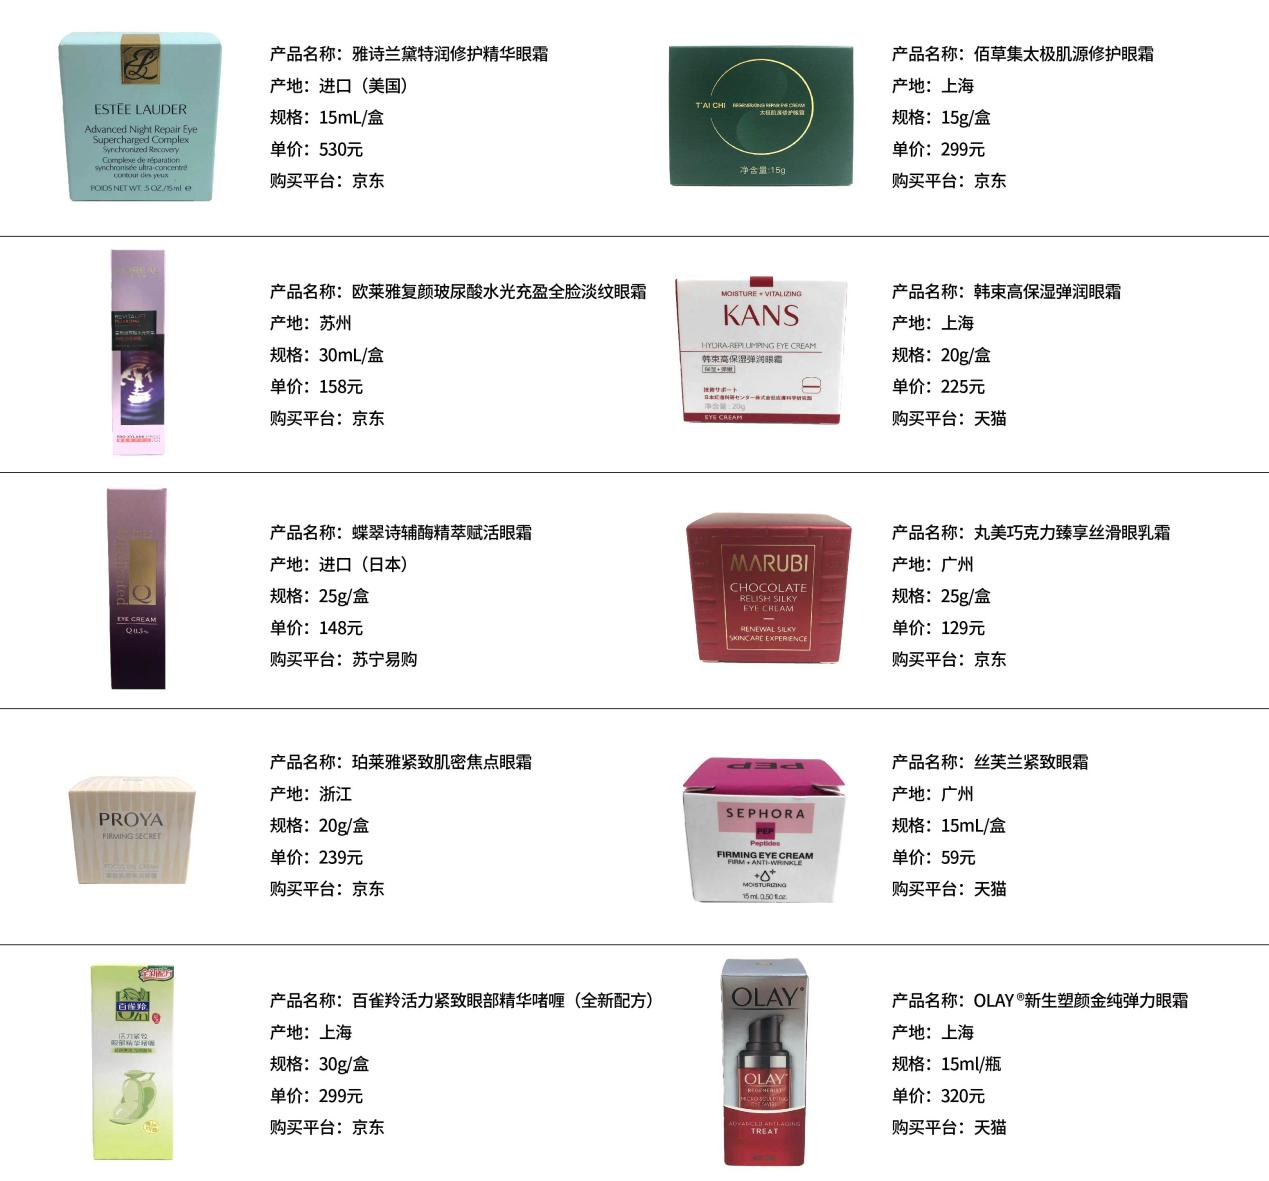 黑龍江省消費者協會發布10款眼霜比較試驗結果